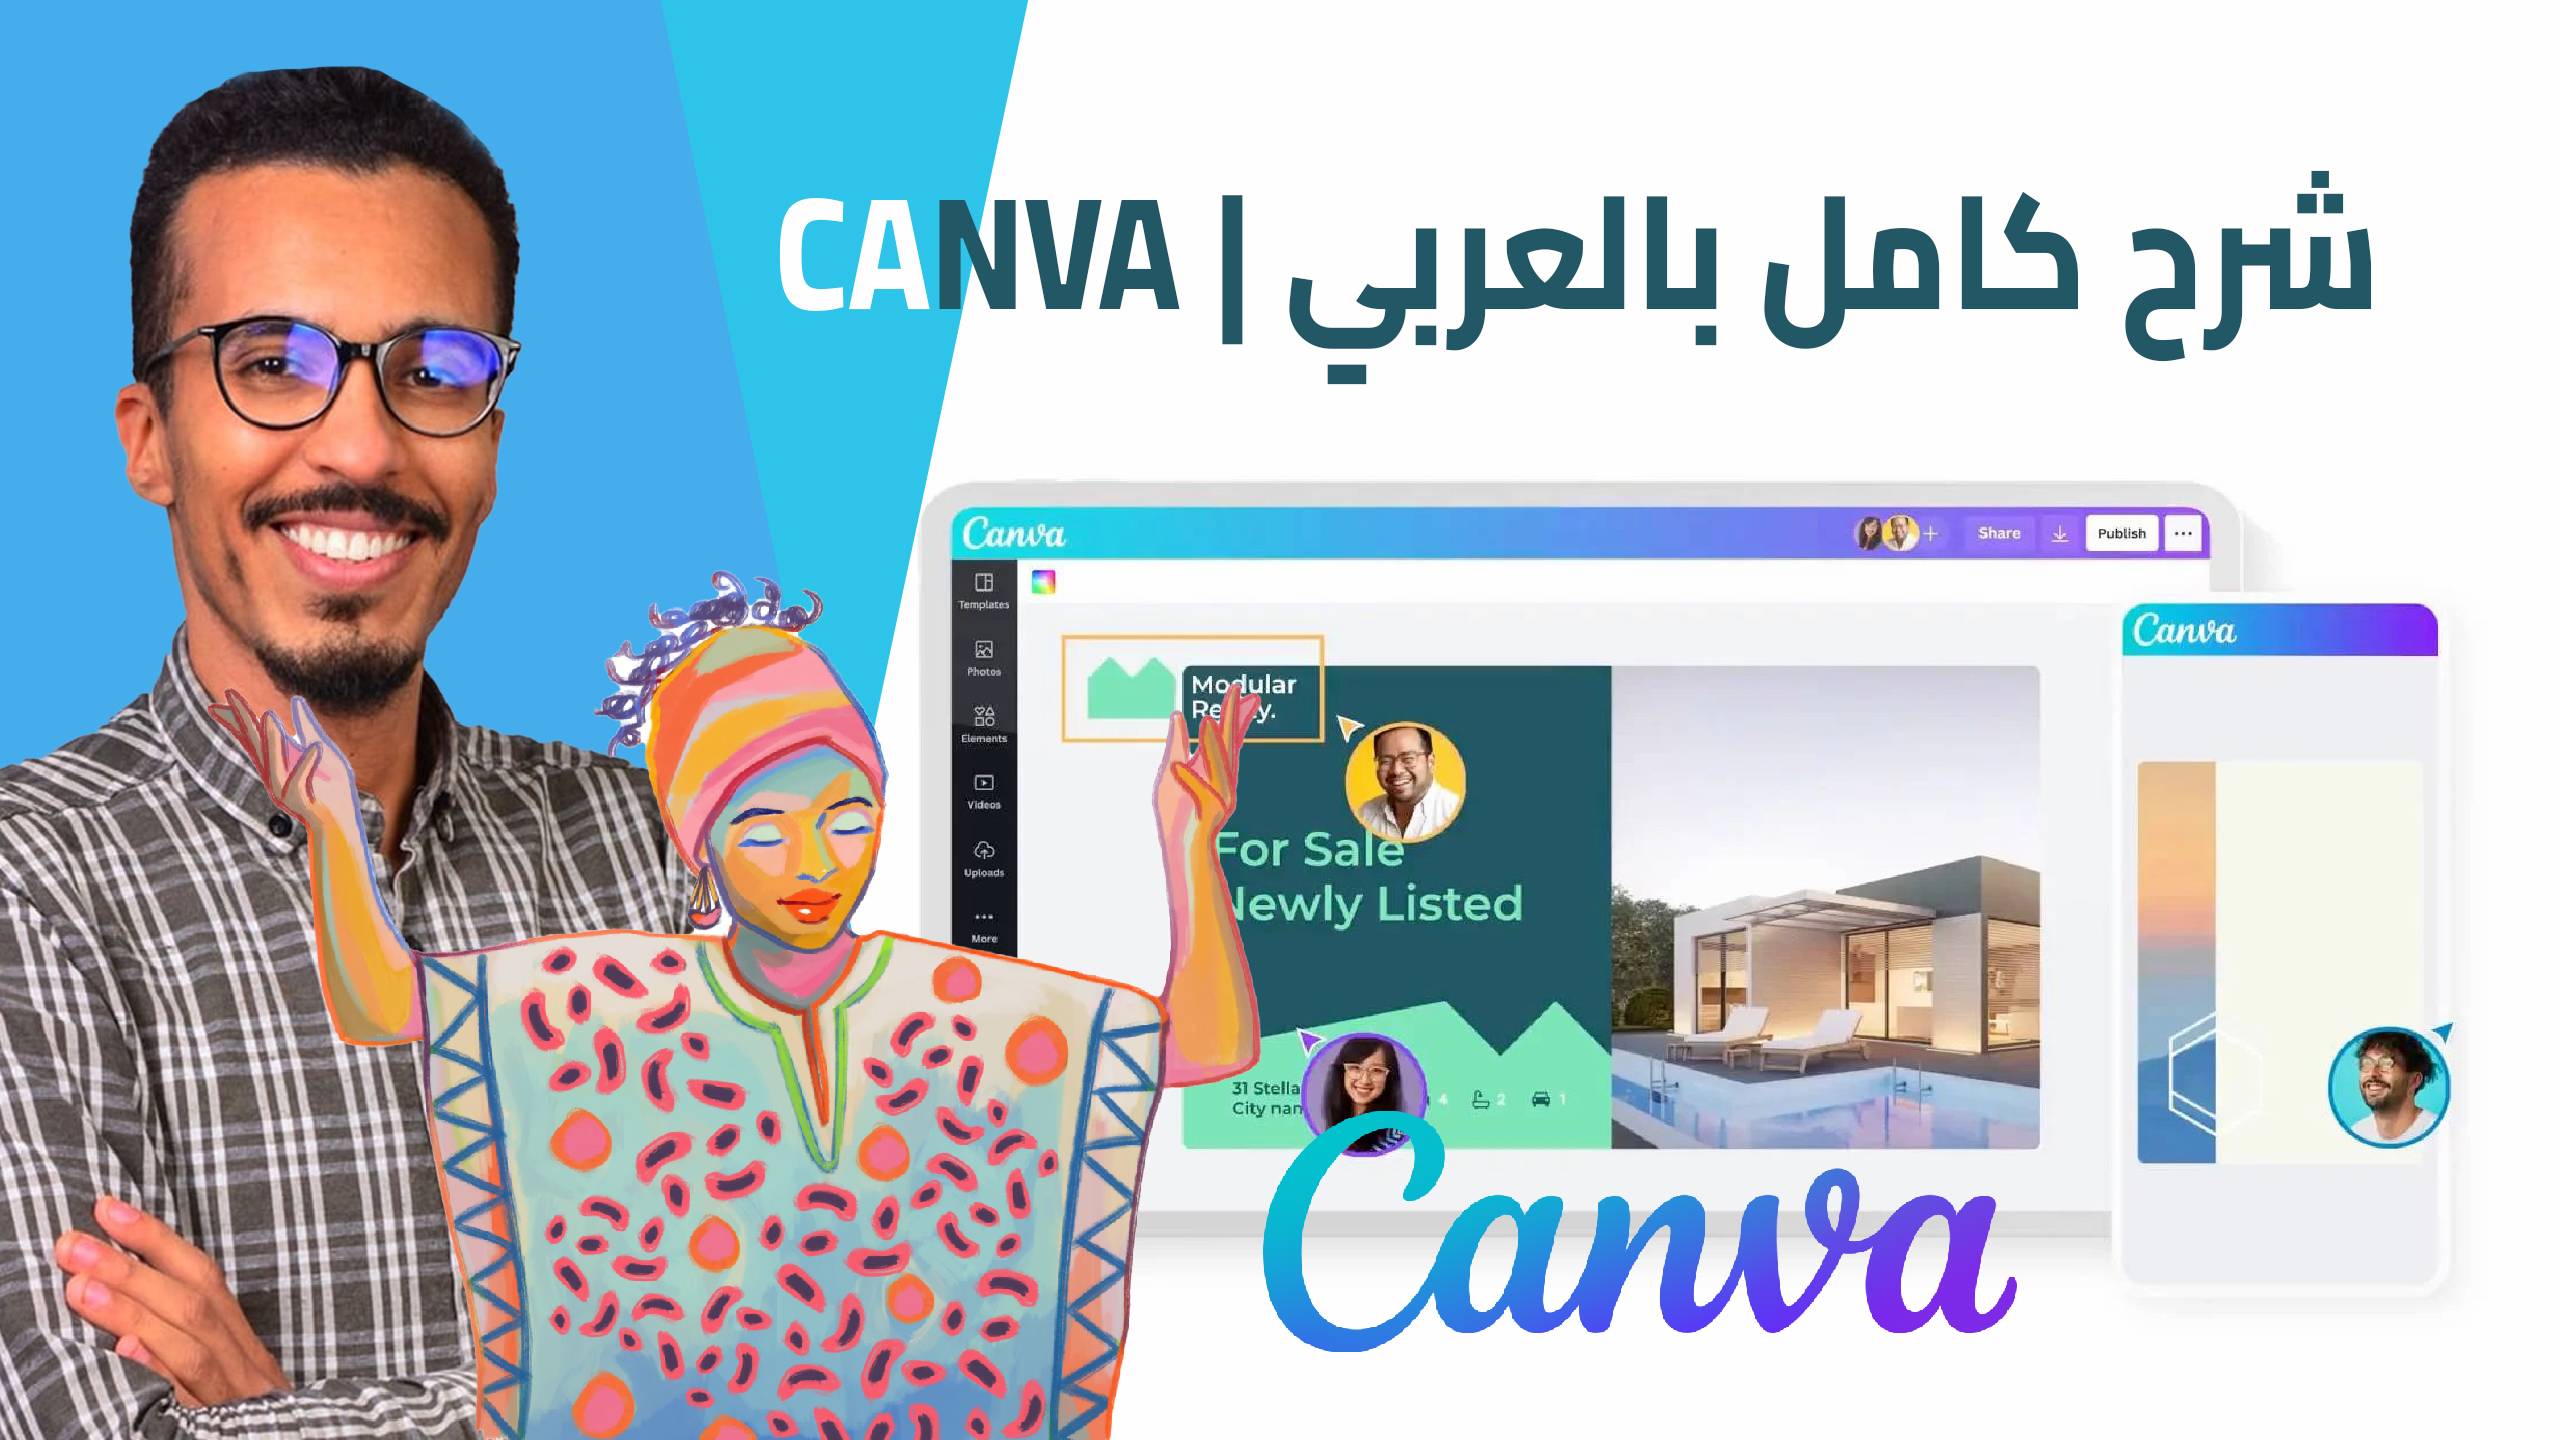 موقع Canva | شرح كامل بالعربي عن موقع Canva